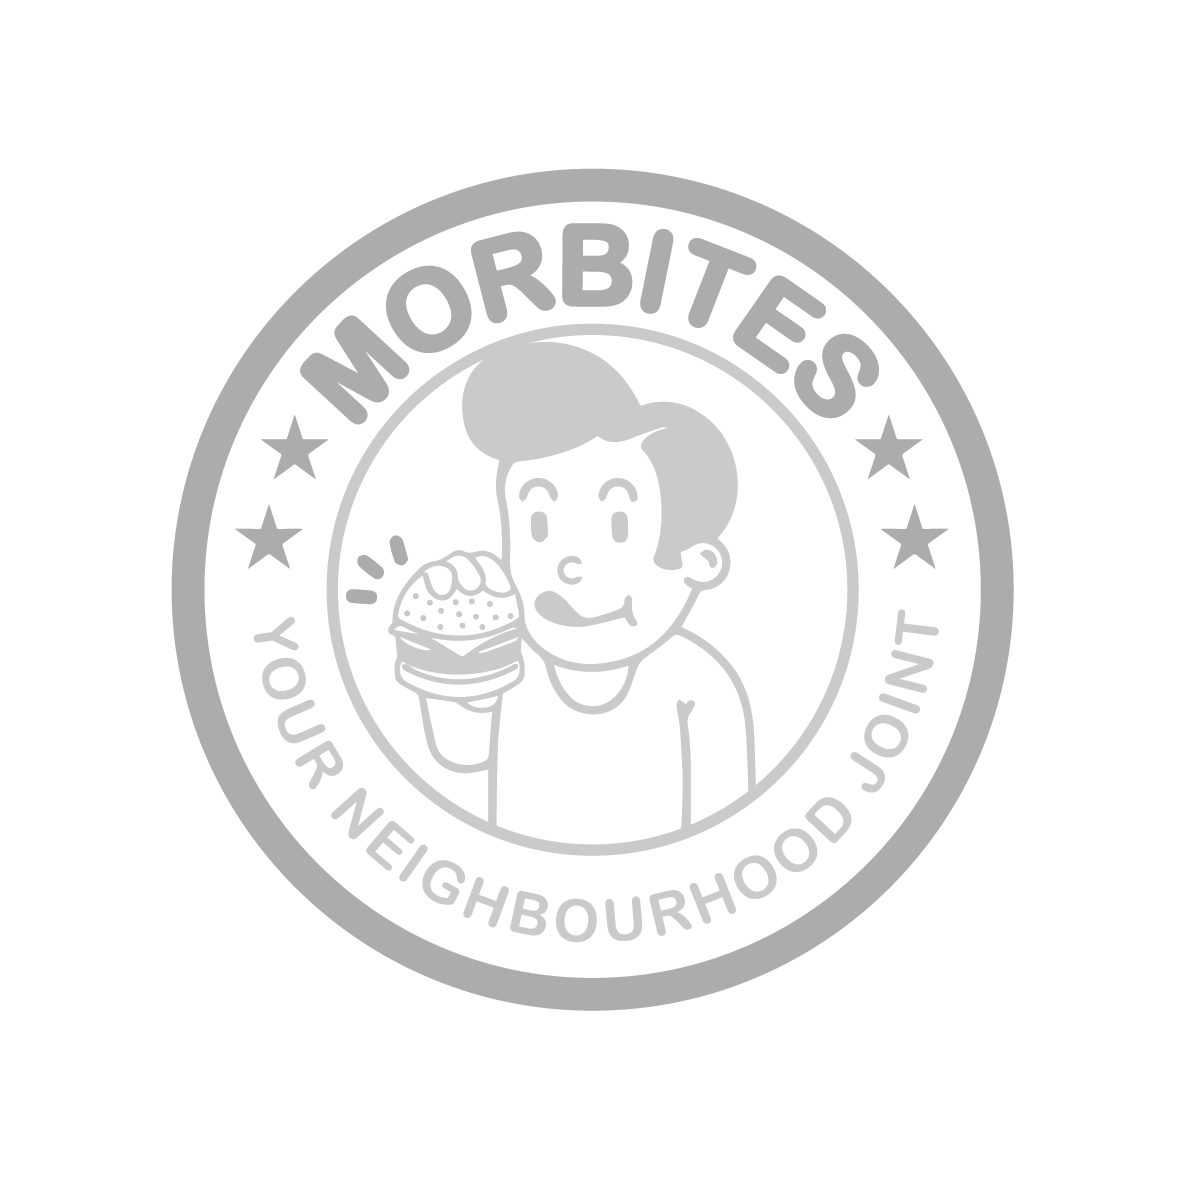 morbites